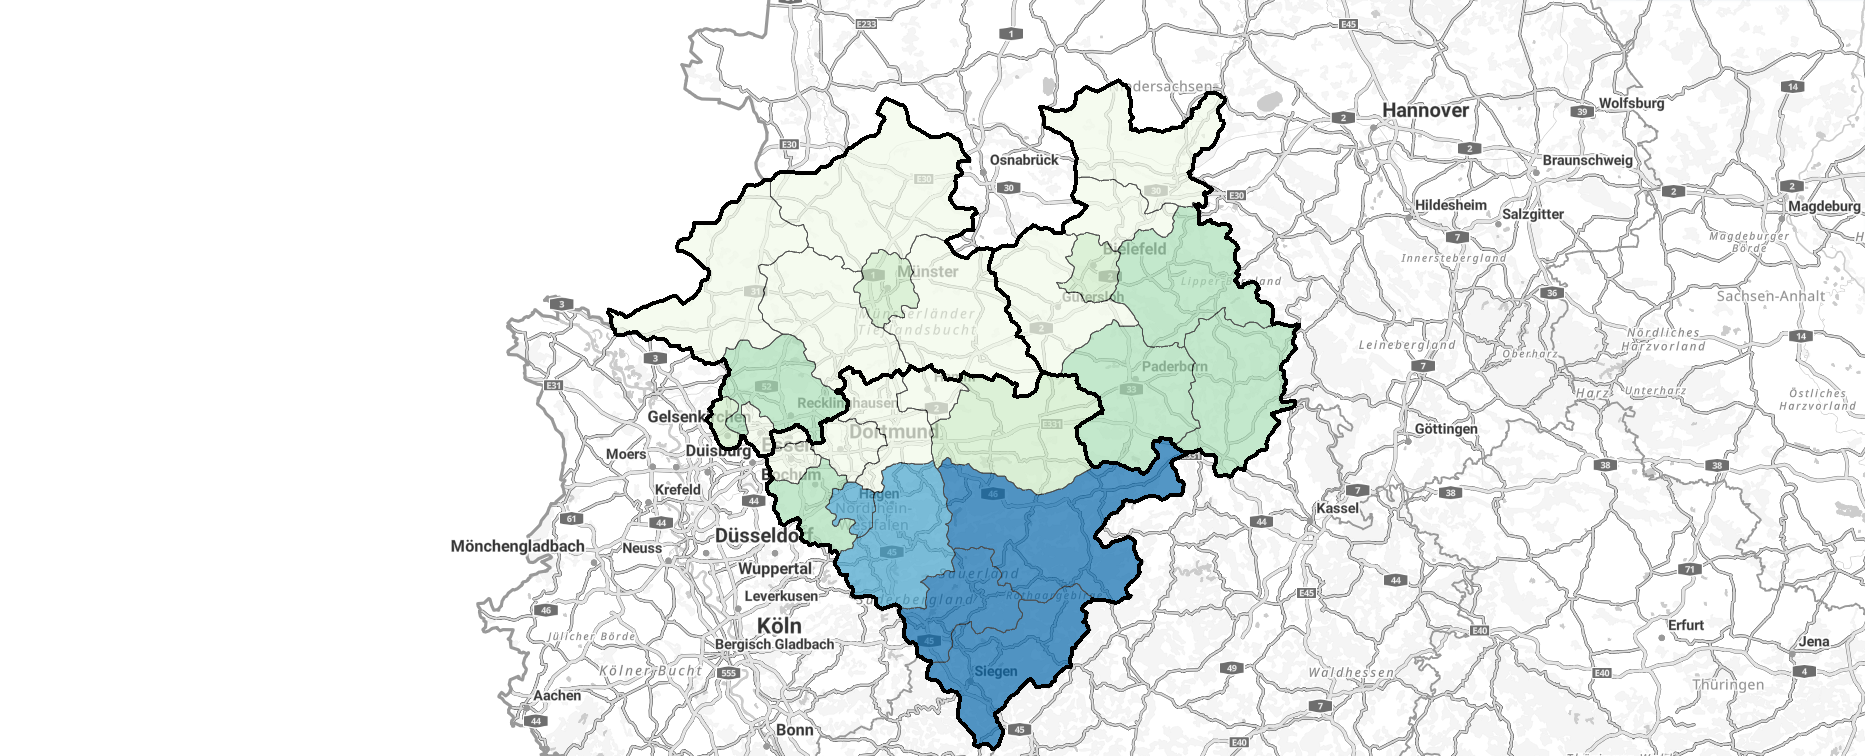 Karte zeigt einen Ausschnitt aus dem Statistikatlas (Westfalen mit Regierungsbezirken und Kreisen)